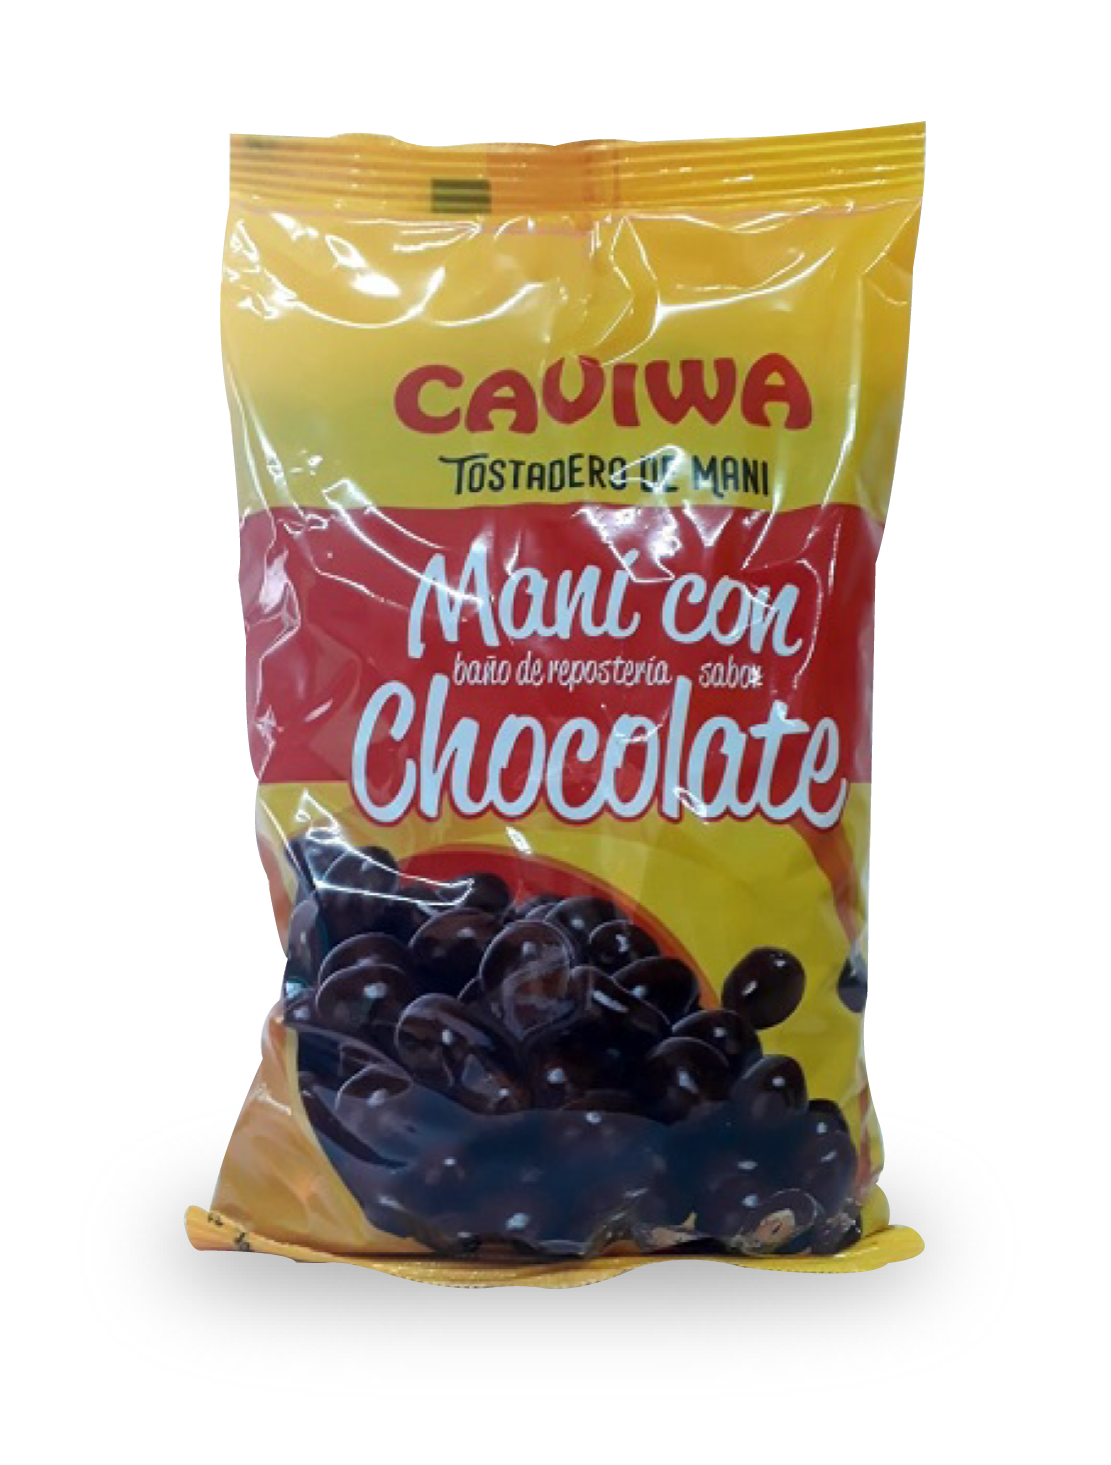 Caviwa - Mani con Chocolate x 1 kg